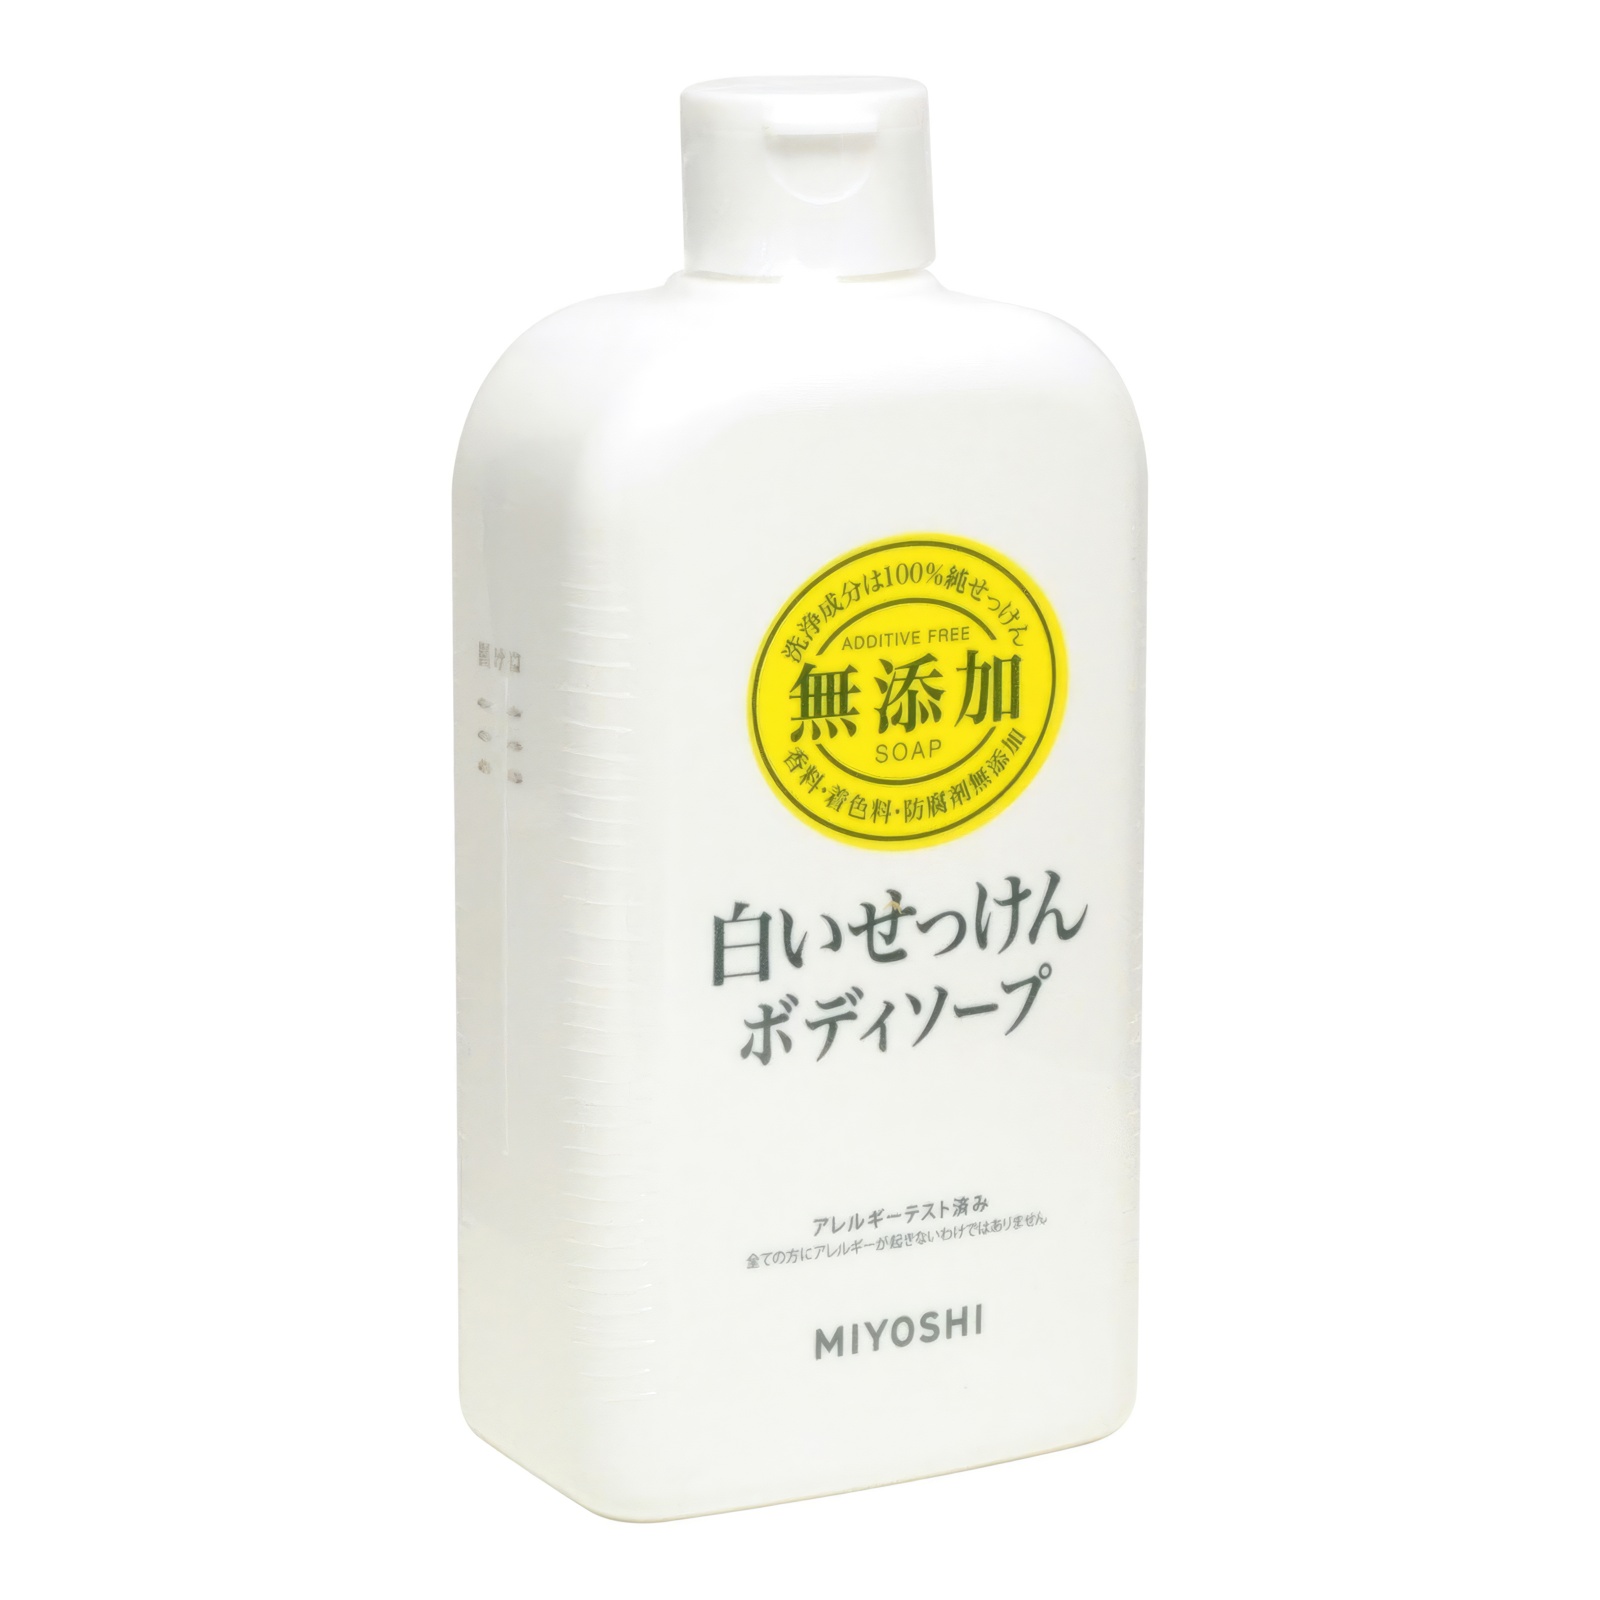 Натуральное жидкое гель-мыло MIYOSHI эко для тела 400 мл мыльная основа brilliant sls free white вес 10 кг